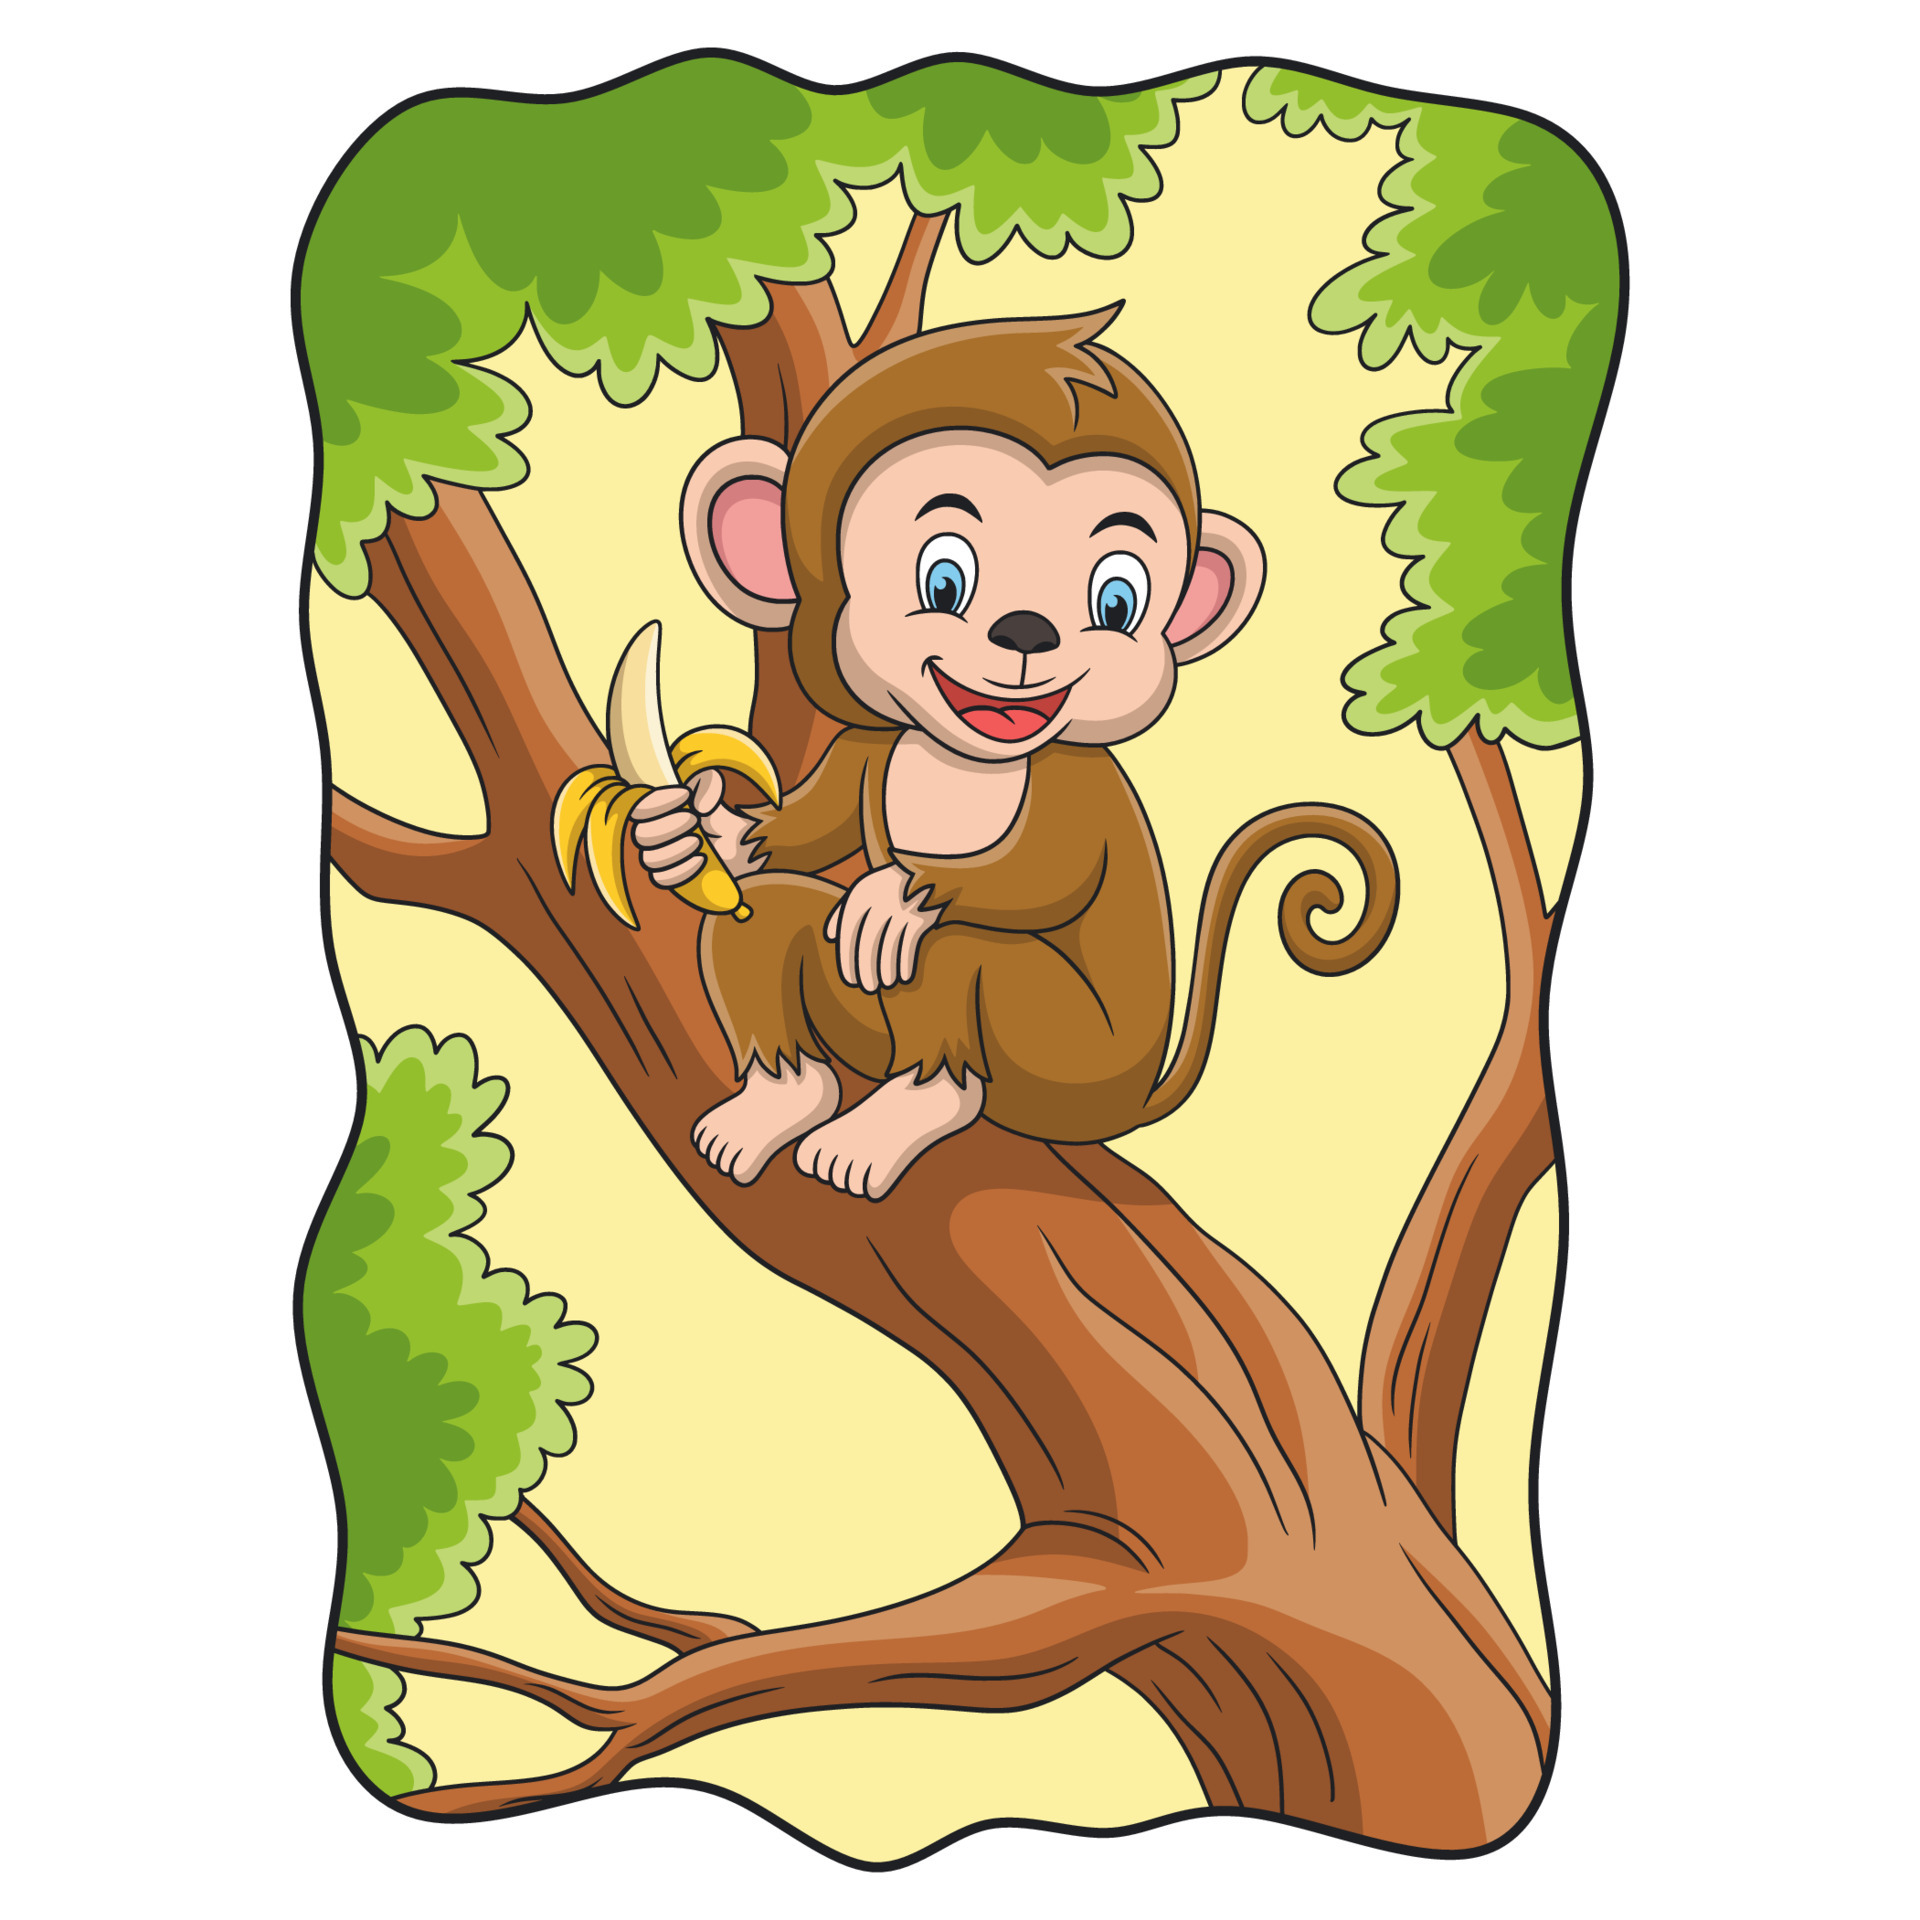 Macaco bonito comendo frutas de banana na ilustração de natureza